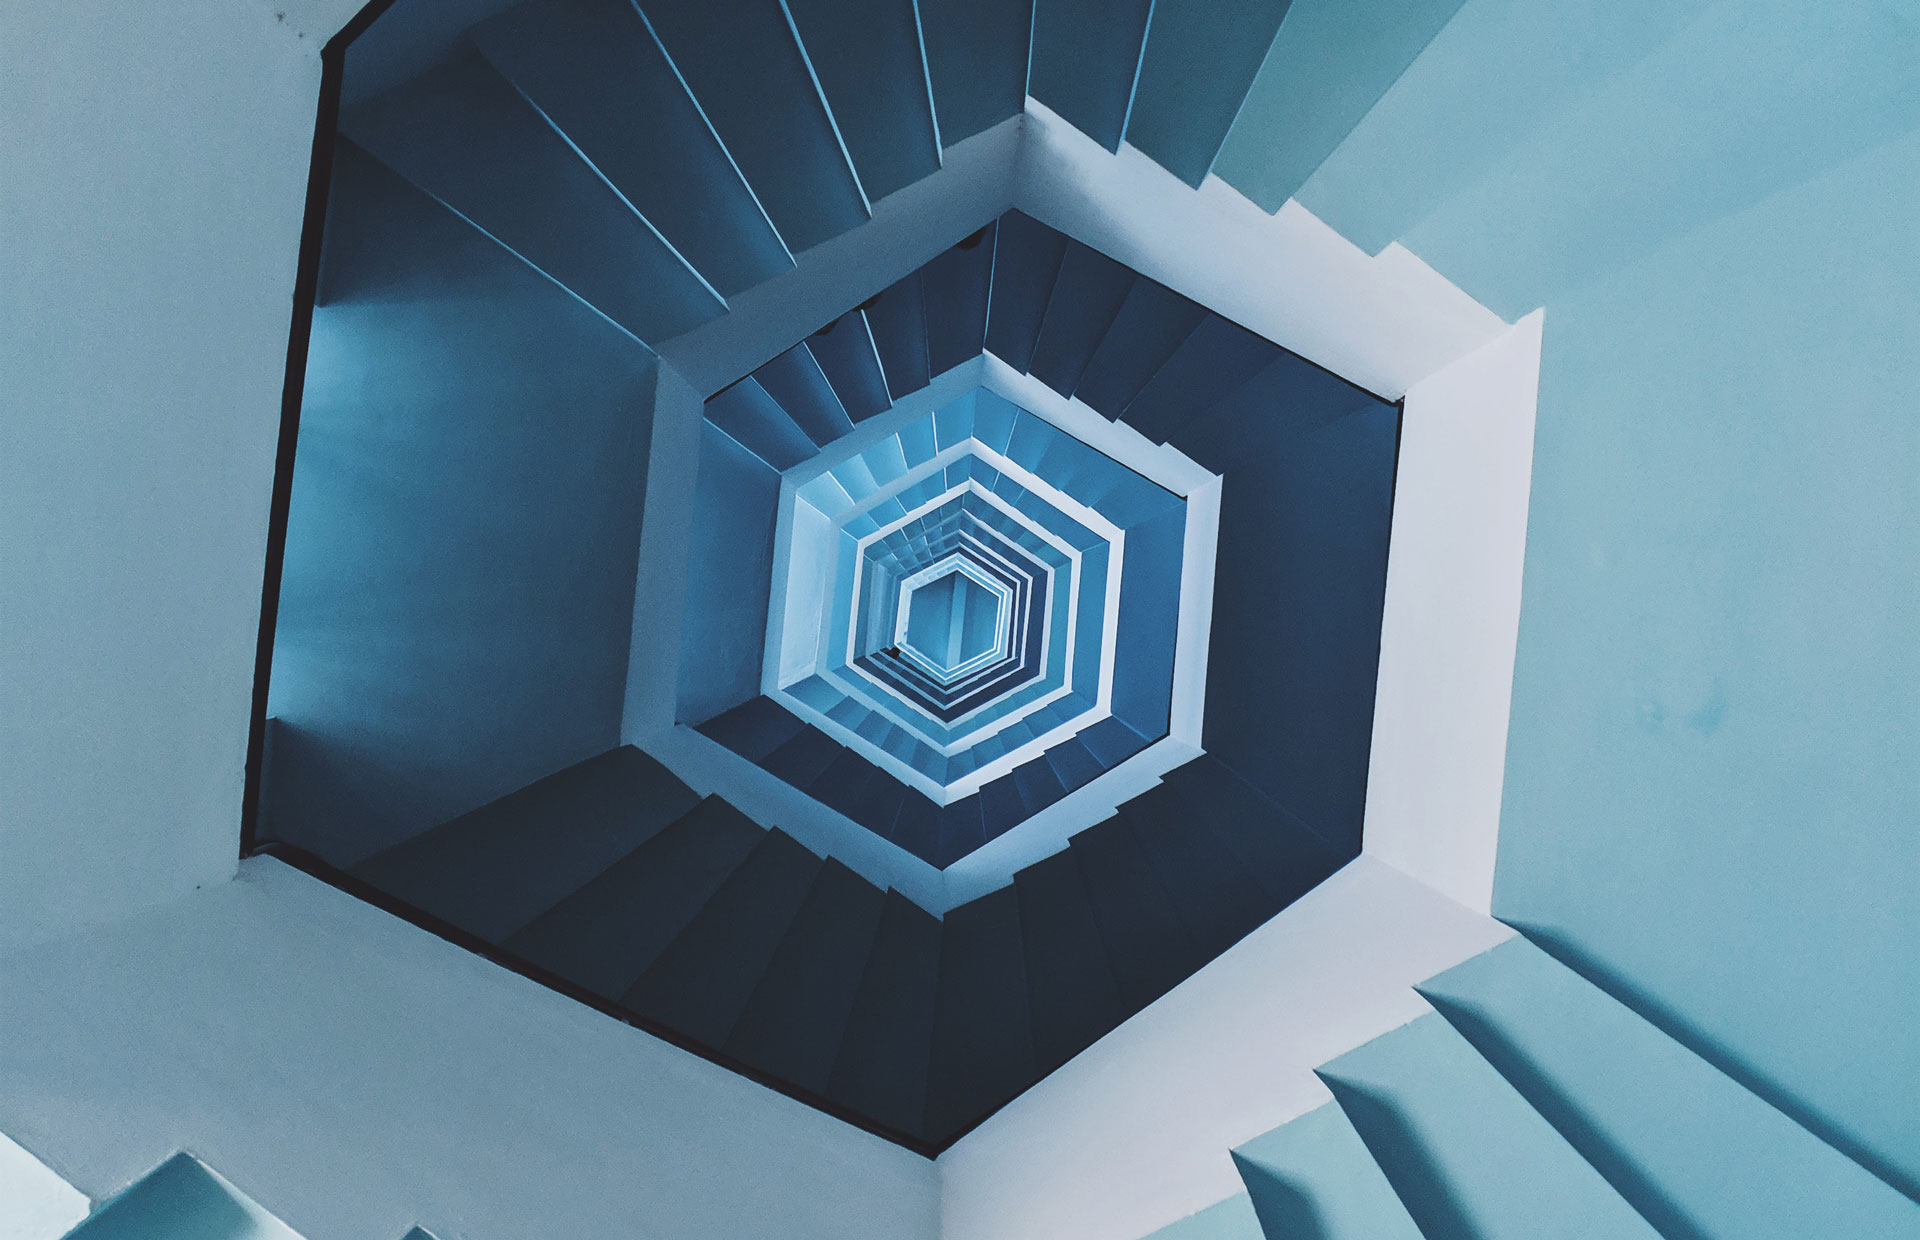 Dizzying spiral staircase